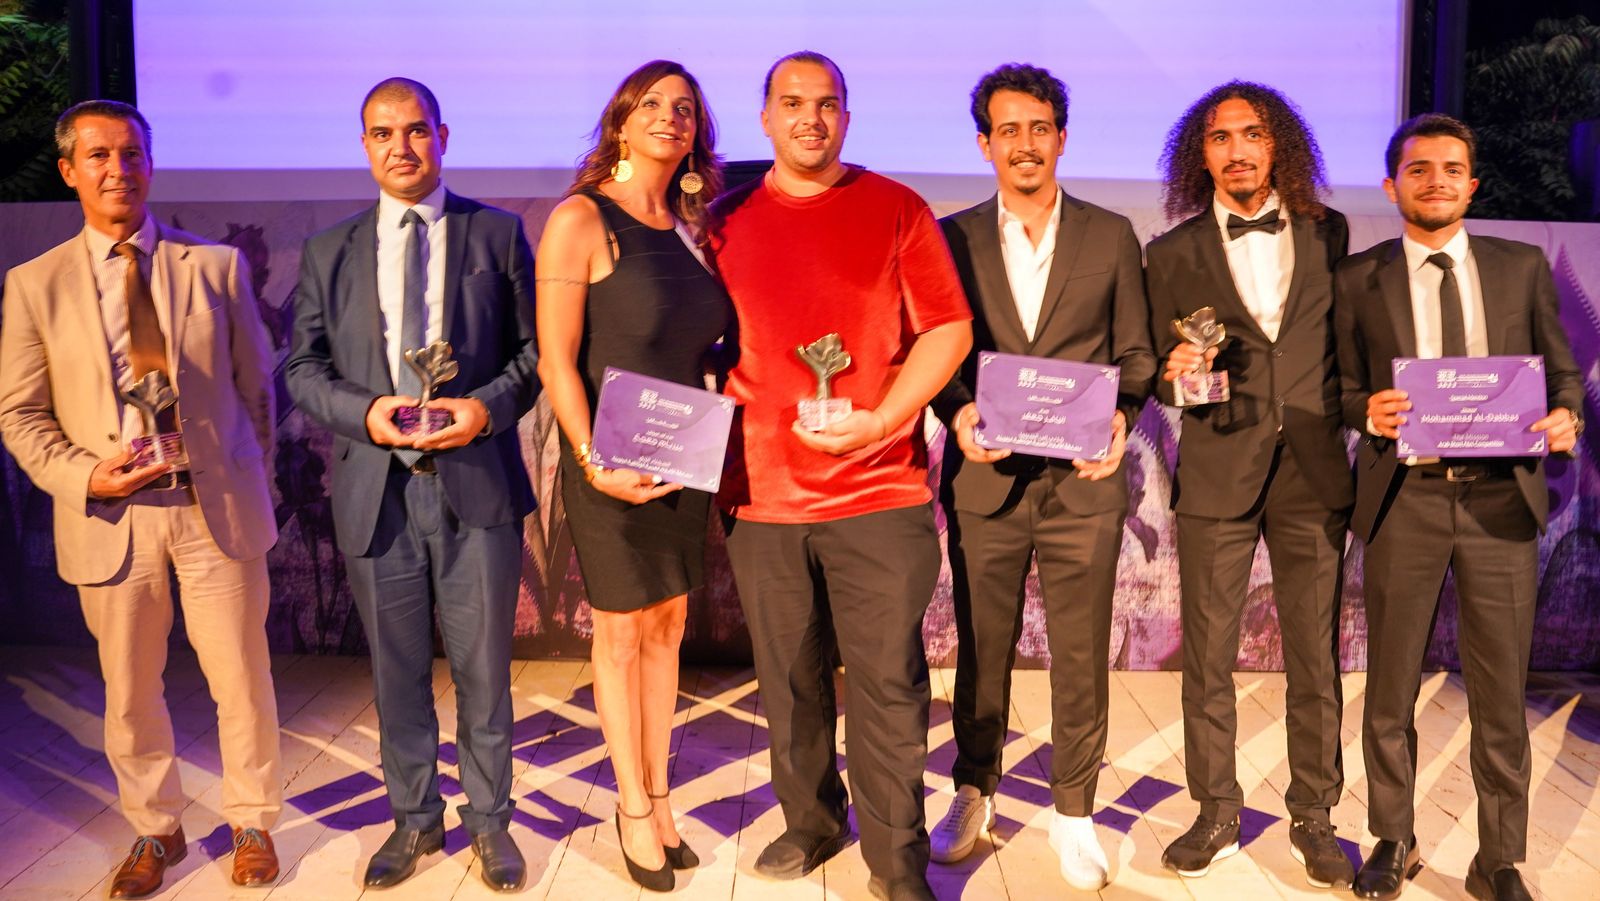 الفائزين بجوائز المهرجان في حفل الختام - المكتب الإعلامي للمهرجان